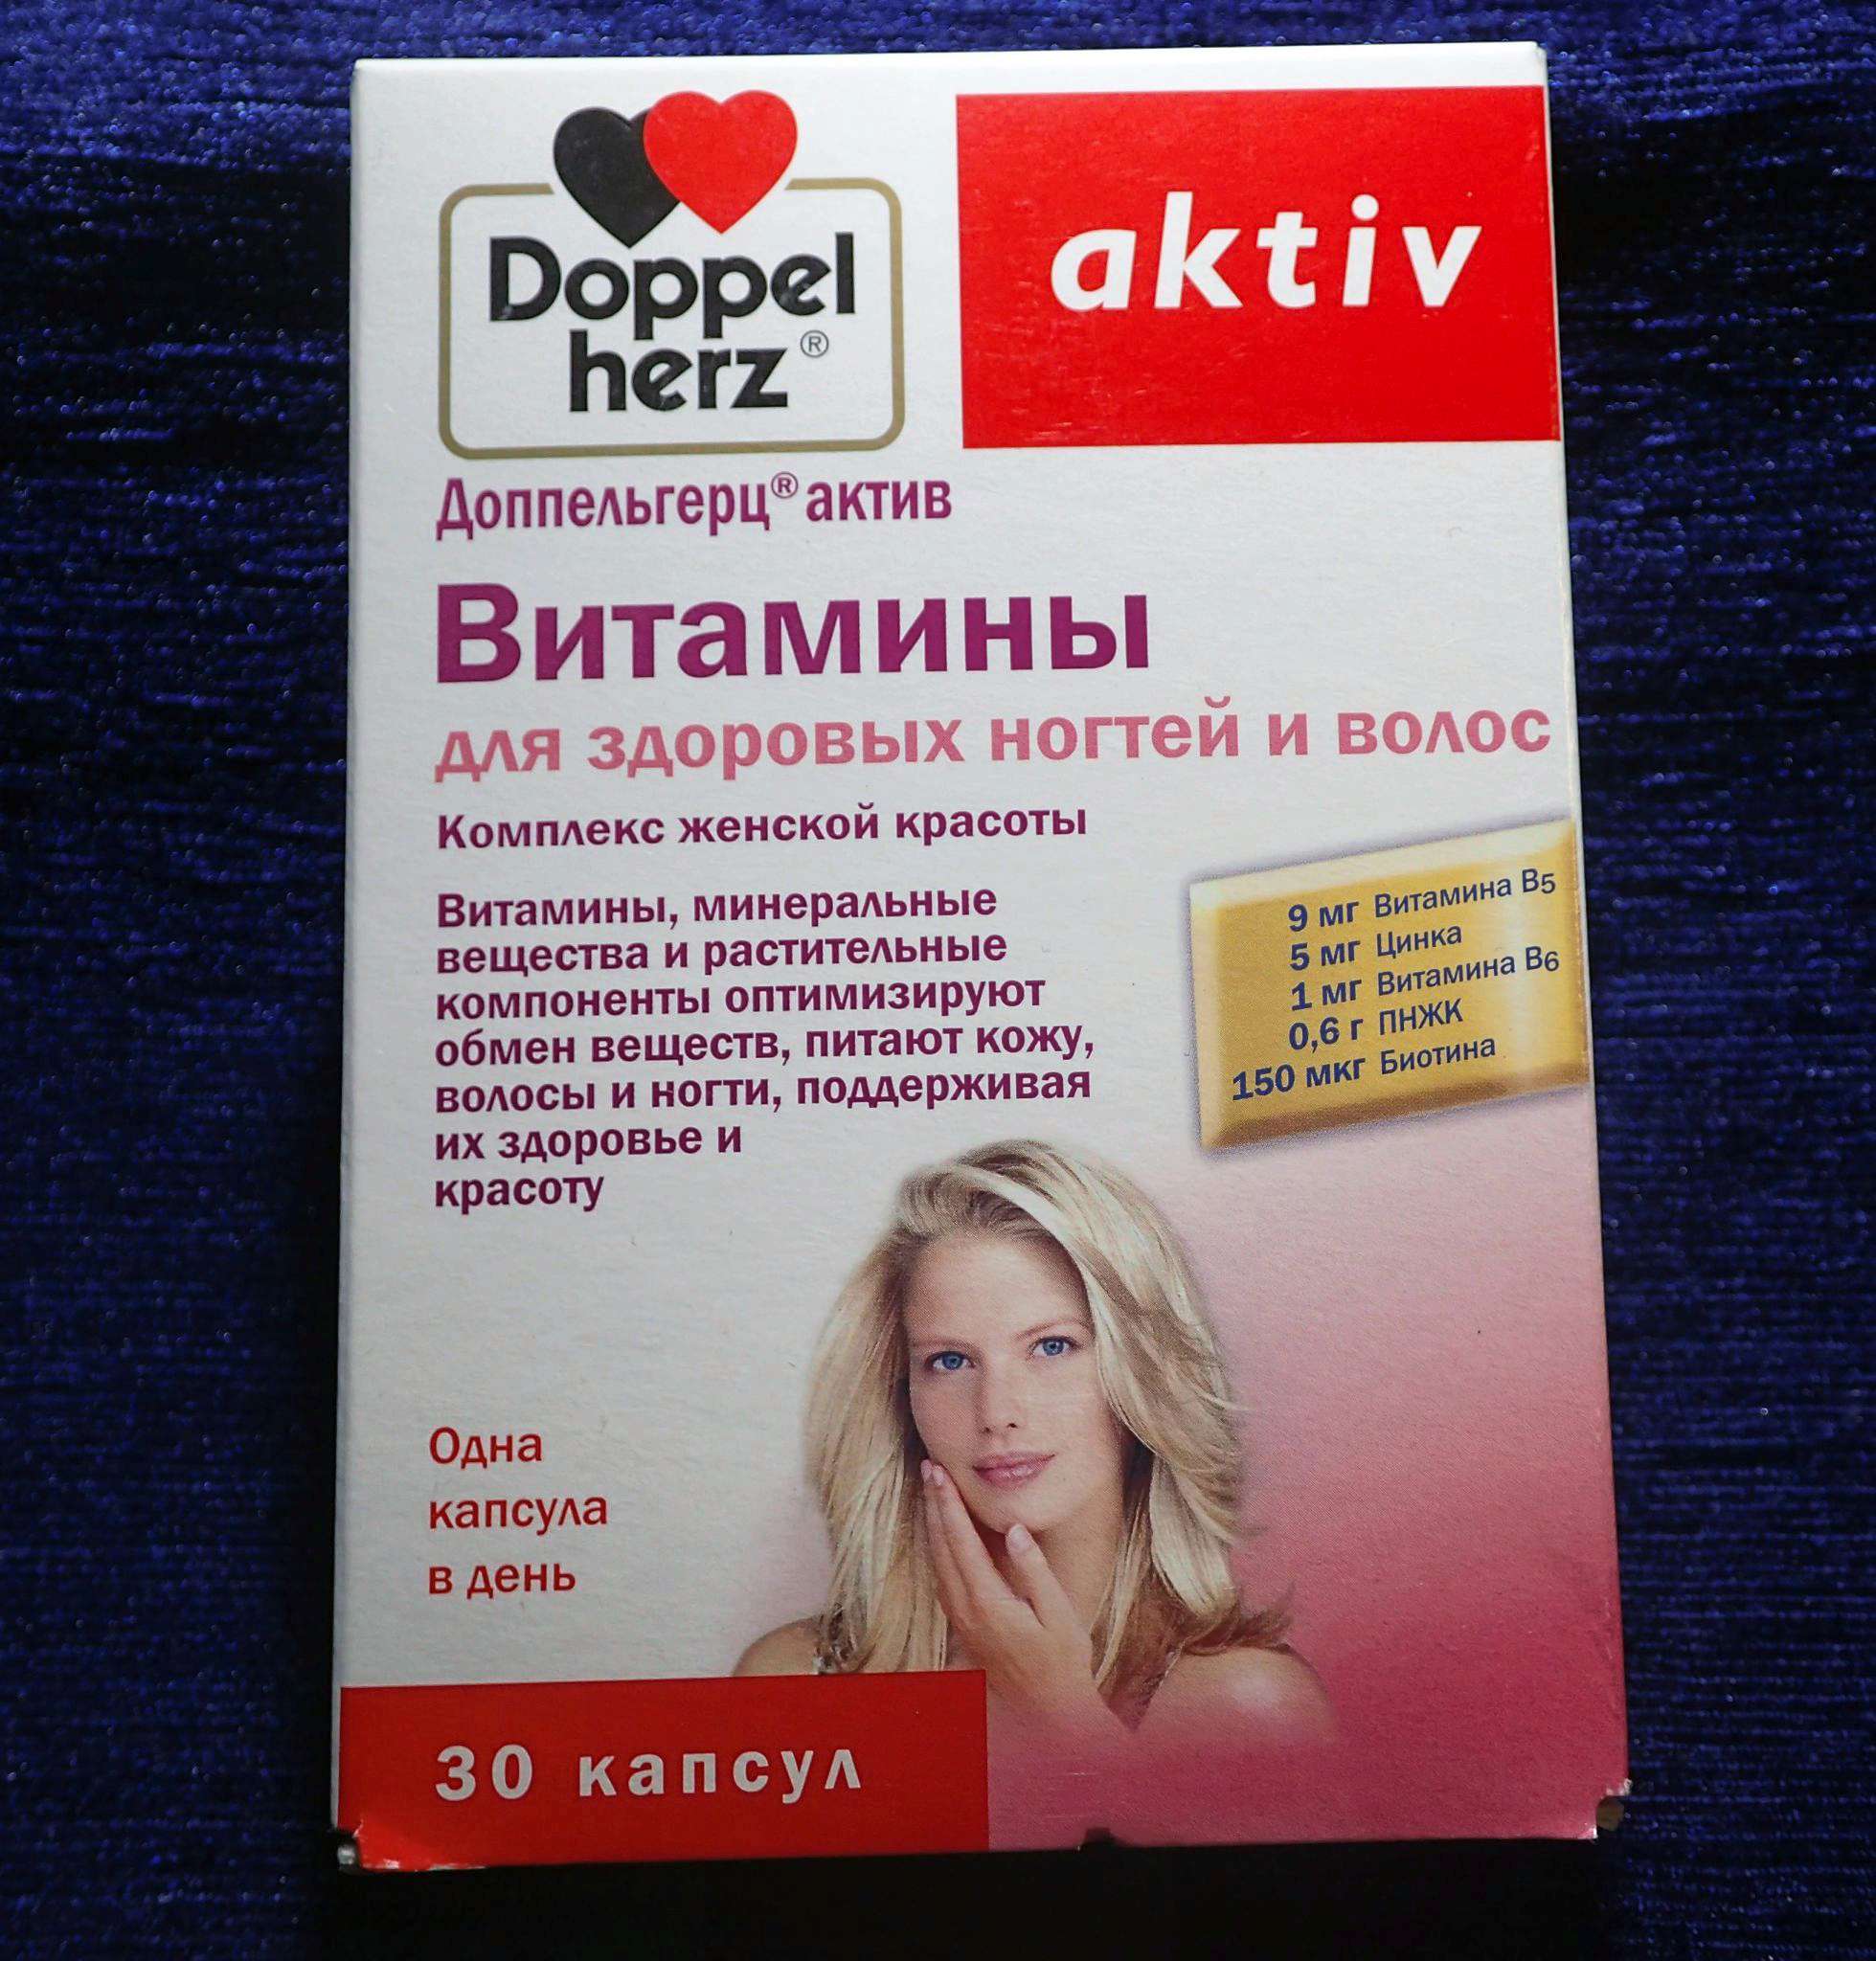 Витамины после менопаузы. Витаминно-минеральный комплекс для женщин Doppelherz. Doppel Herz aktiv витамины для волос. Доппельгерц Актив менопауза. Доппельгерц Актив витамины для женщин.